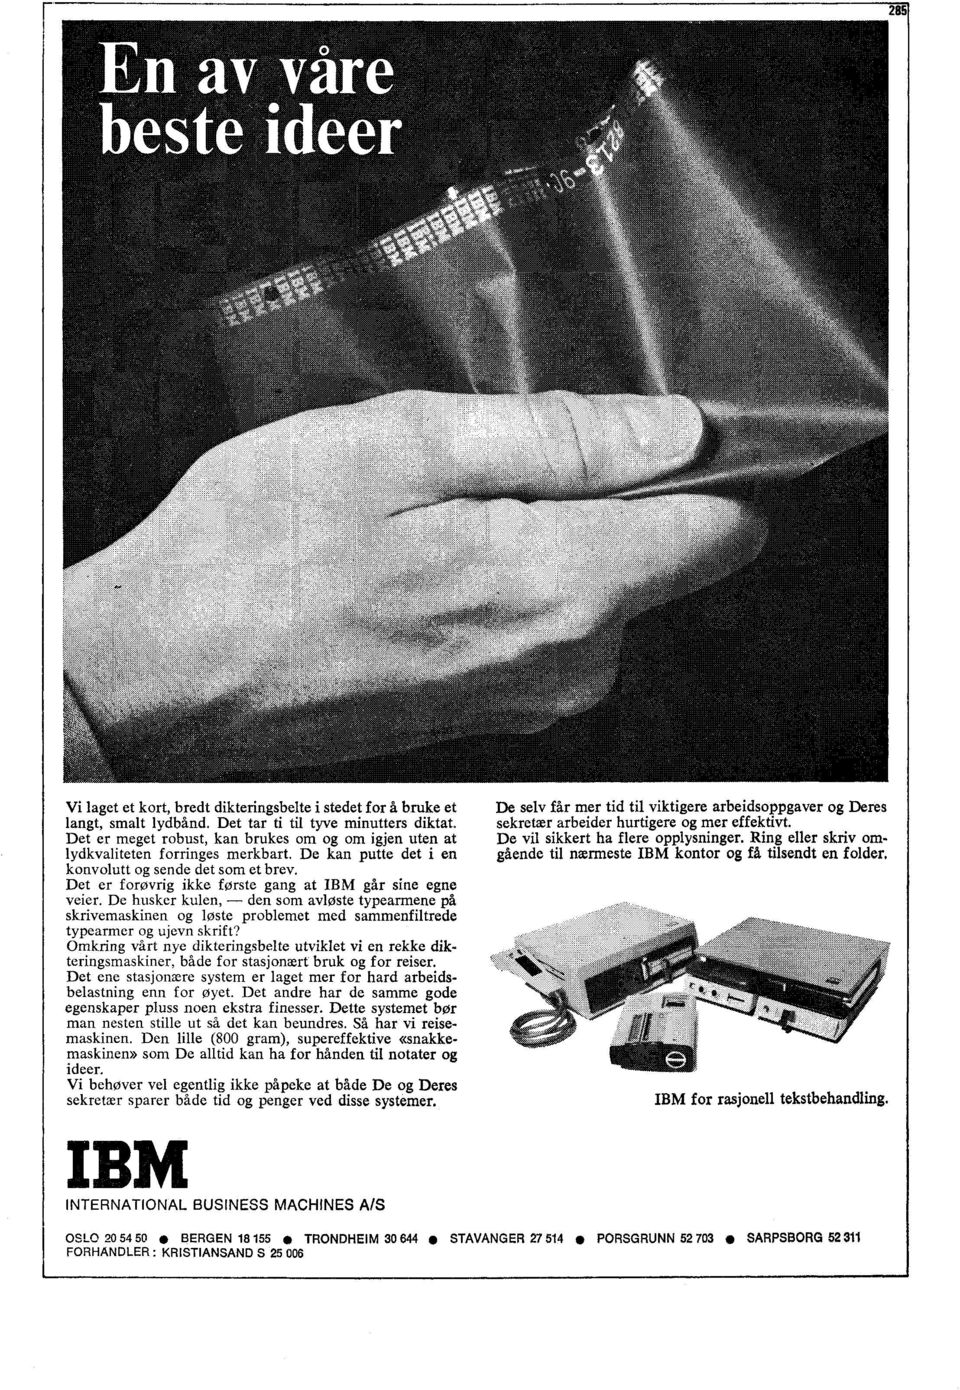 Det er forøvrig ikke første gang at IBM går sine egne veier. De husker kulen, den som avløste typearmene skrivemaskinen og løste problemet med sammenfiltrede typearmer og ujevn skrift?